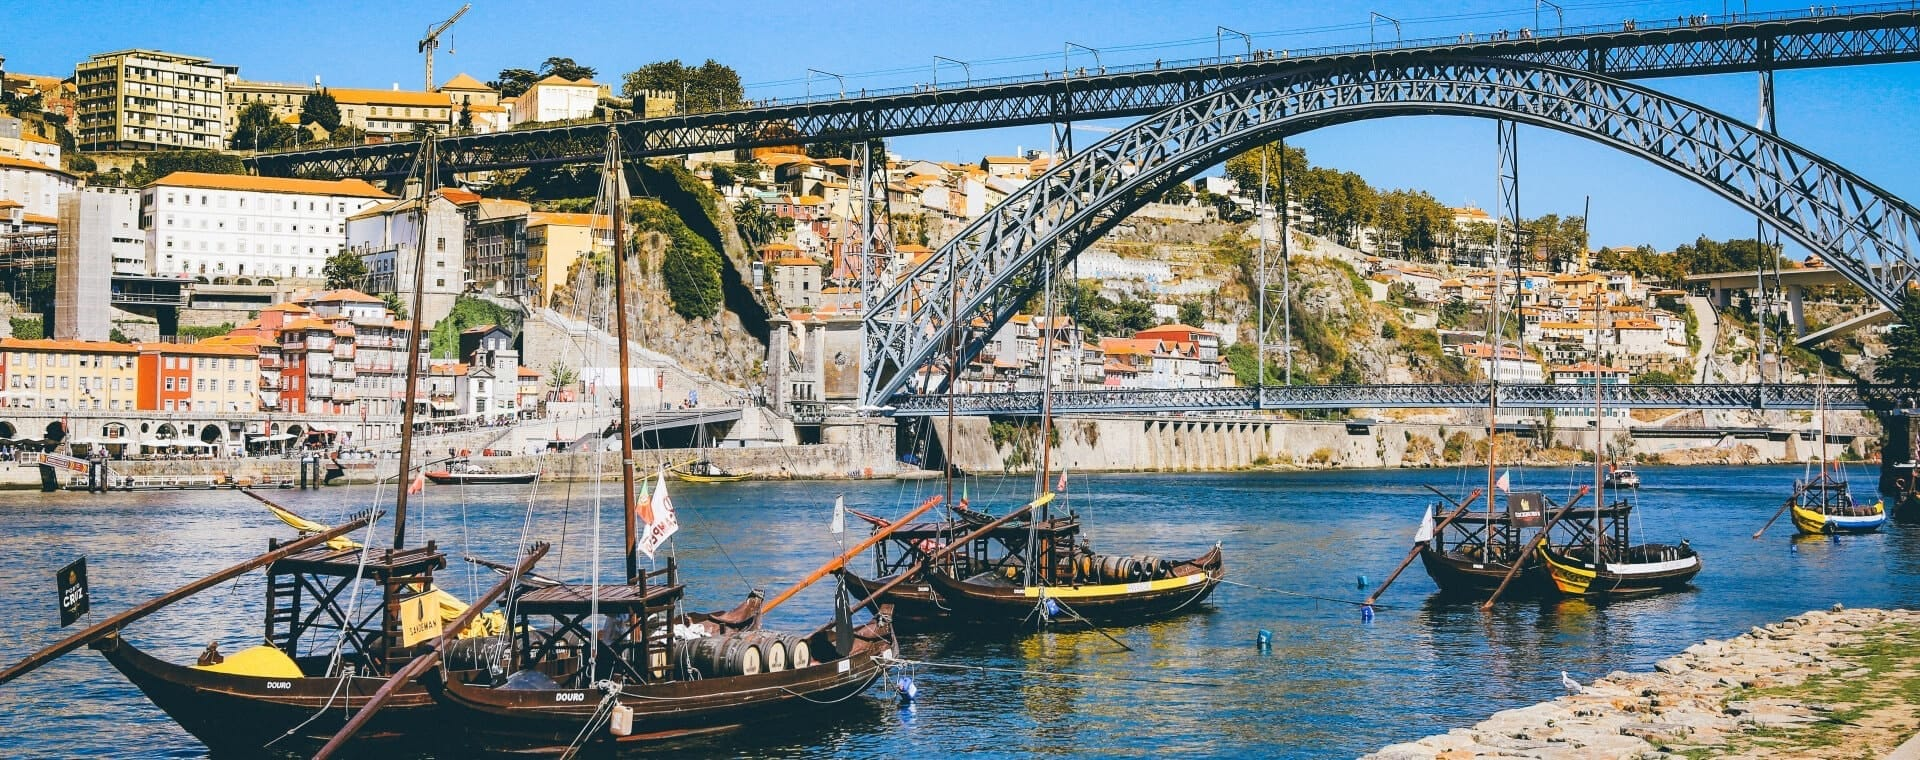 Boats docked under a bridge in porto, portugal.